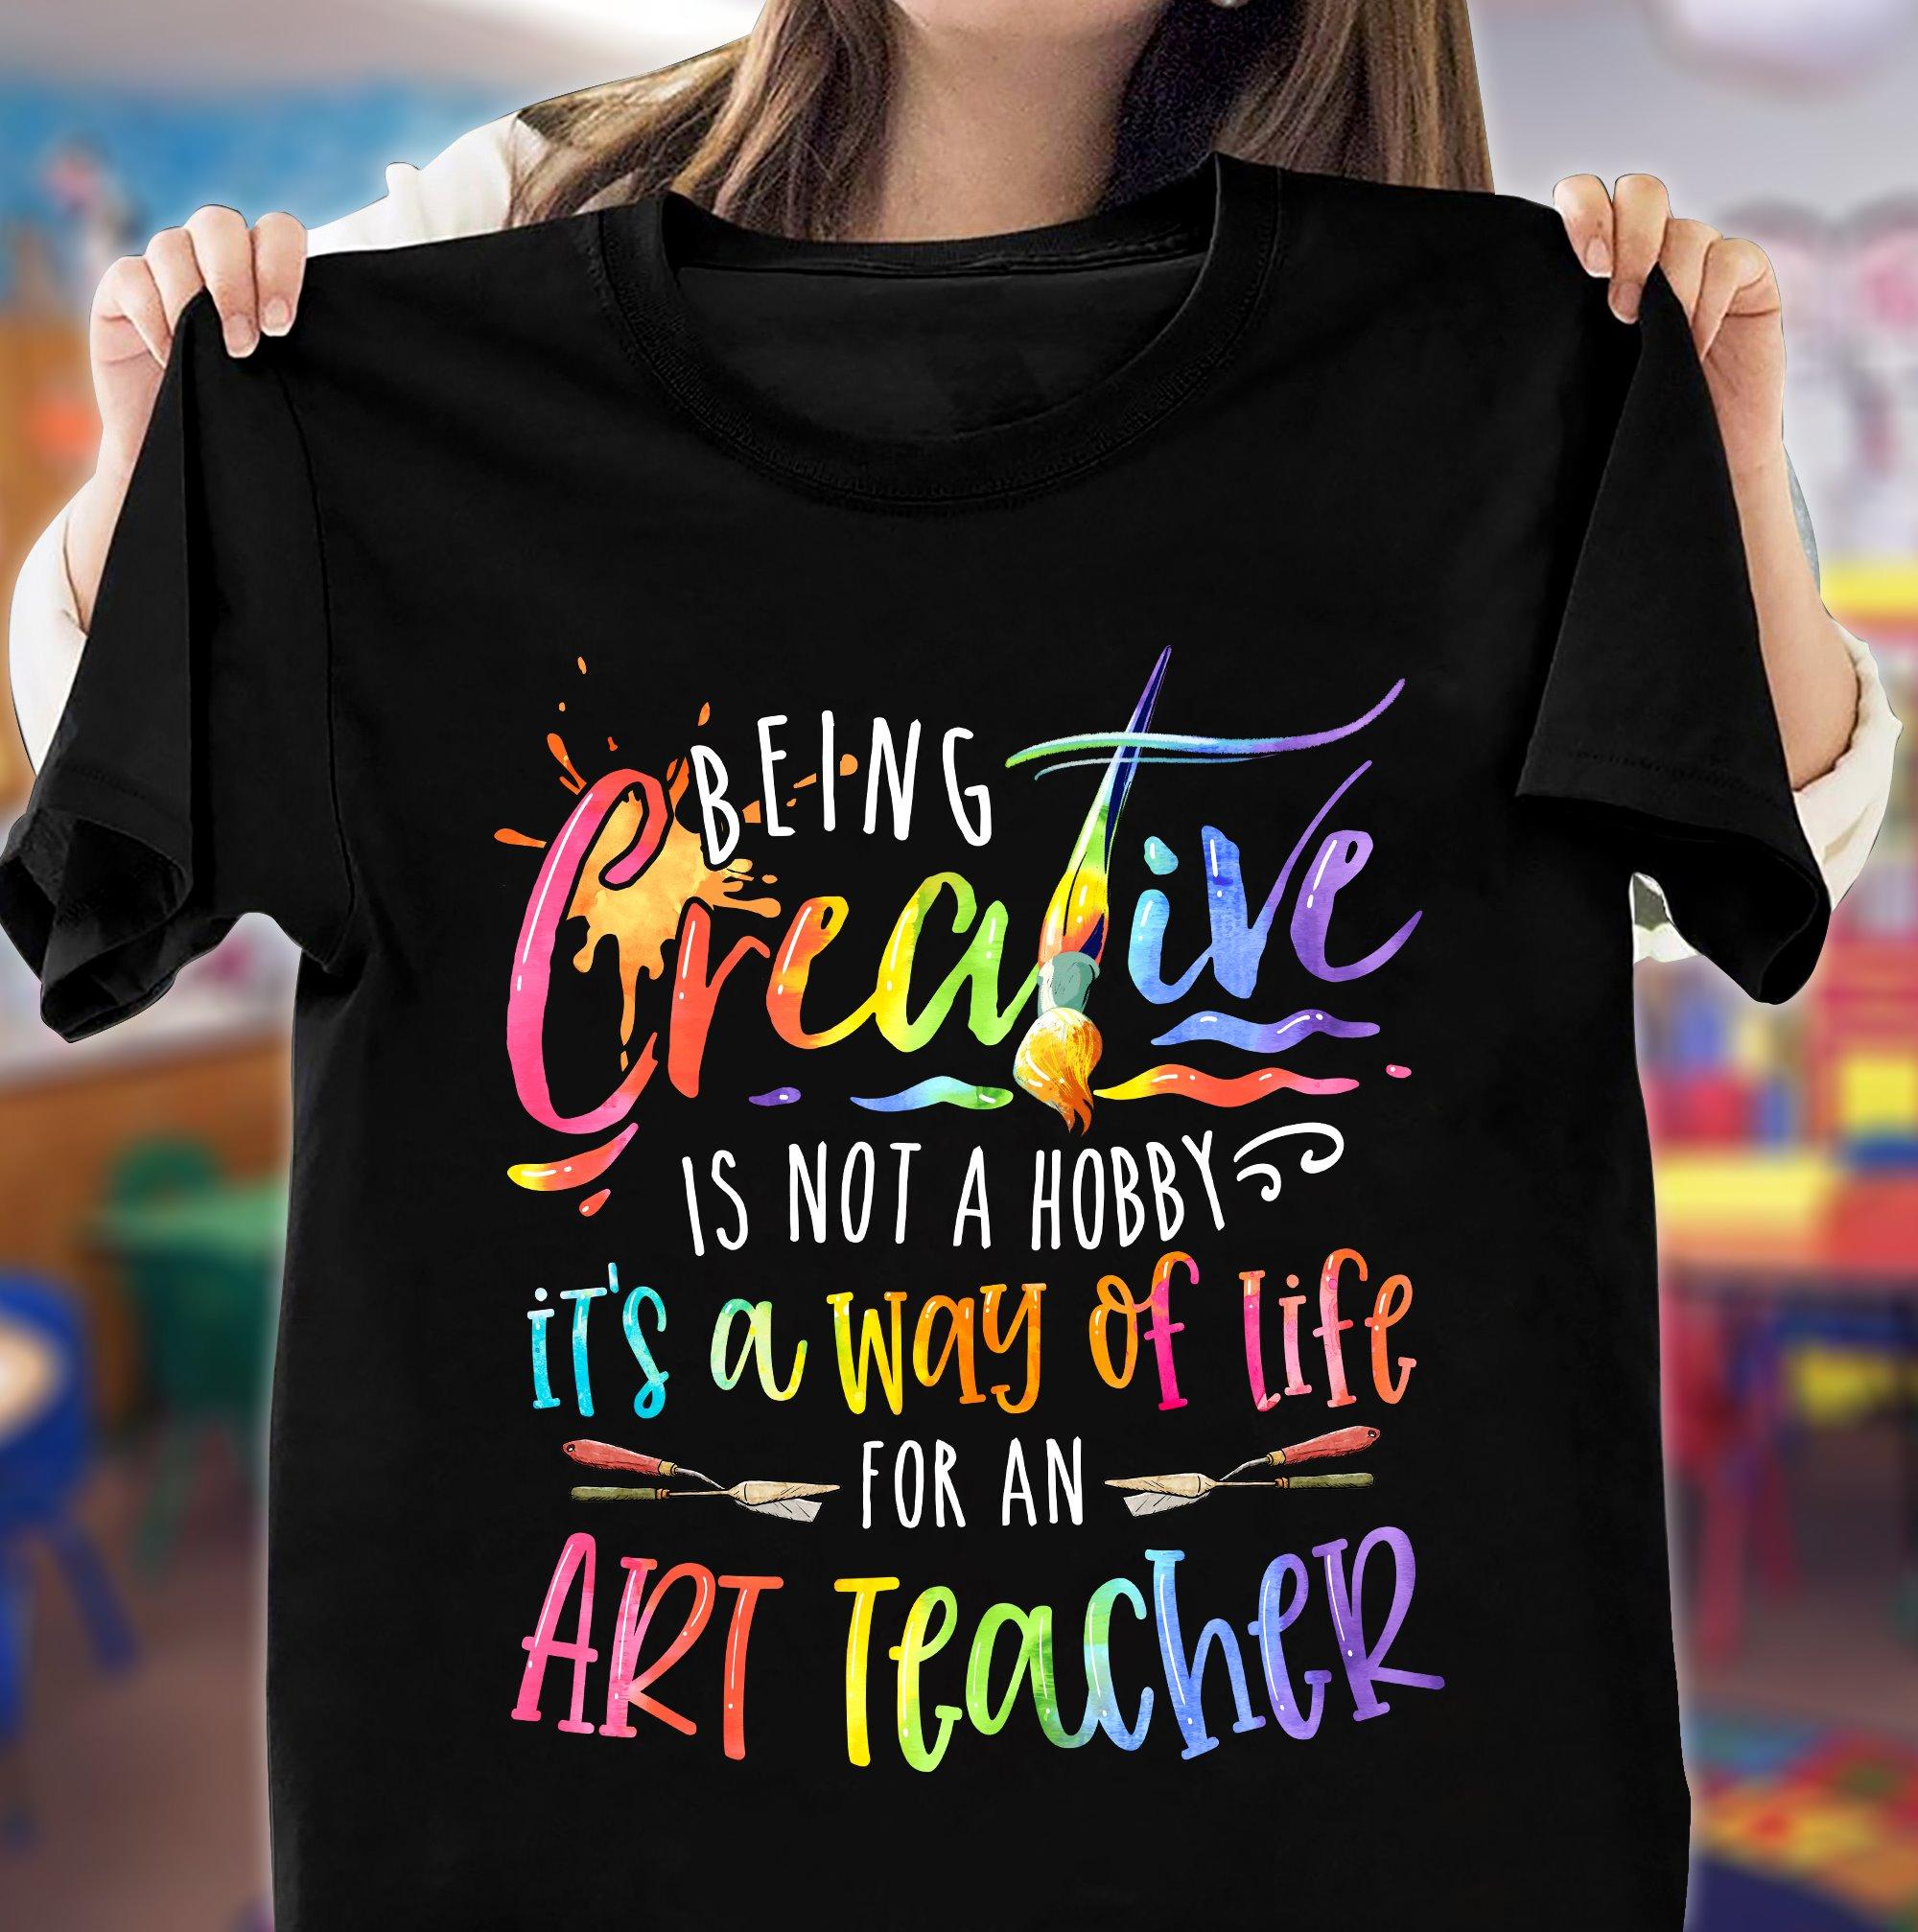 Being creative is not a hobby it's a way of life for an art teacher - Teacher the job, teacher's day gift